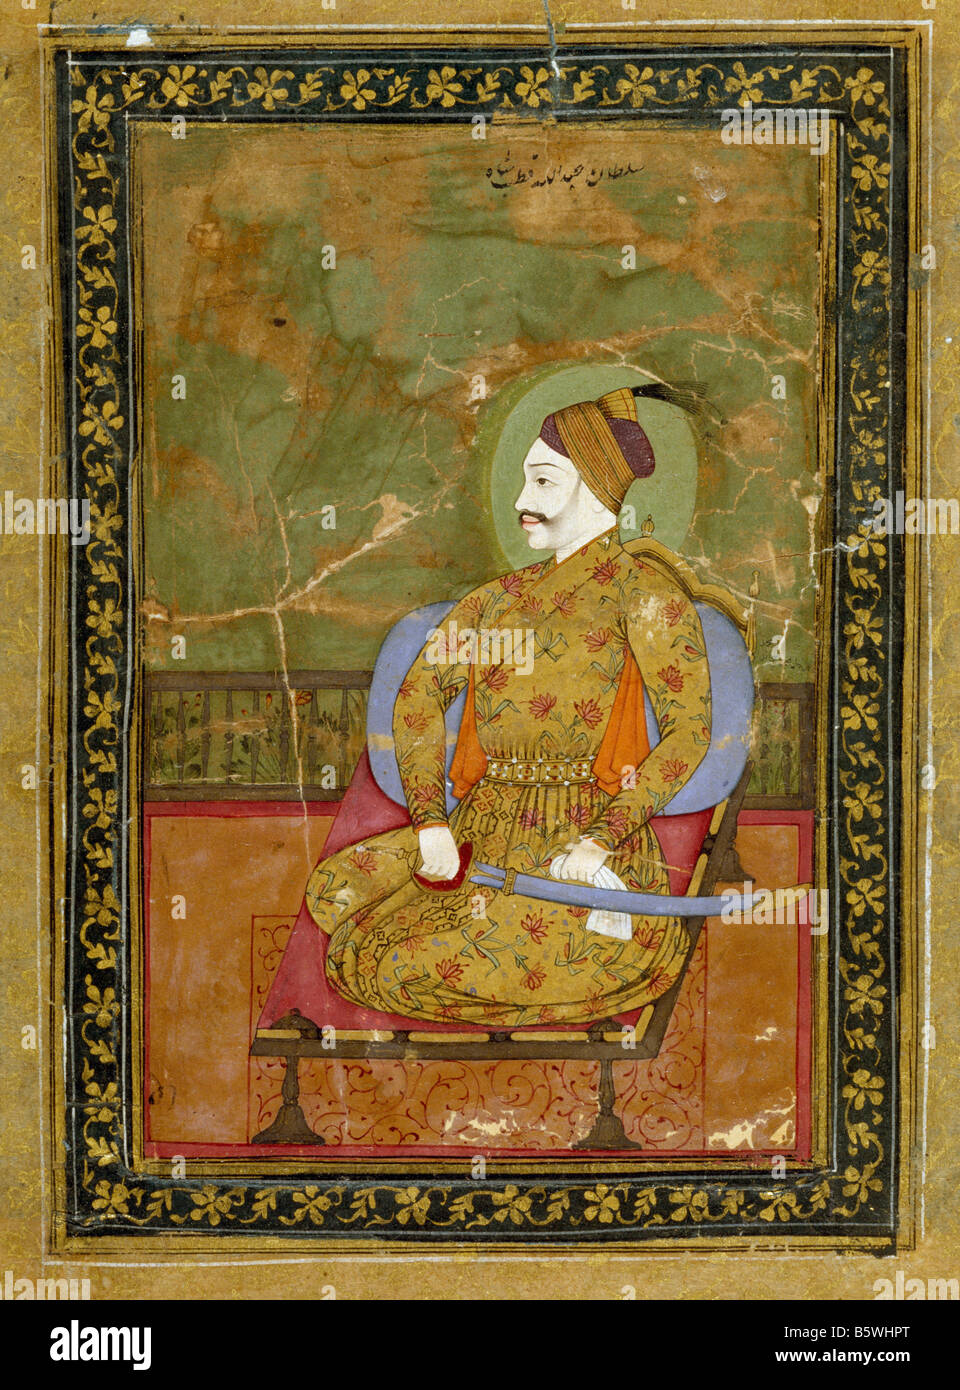 Porträt von Malik Amber islamische Buch Illustration Ahmednagar ca. 1600 n. Chr.. National Museum of New Delhi Indien 5014/8. 26,2 x 14,3 Stockfoto